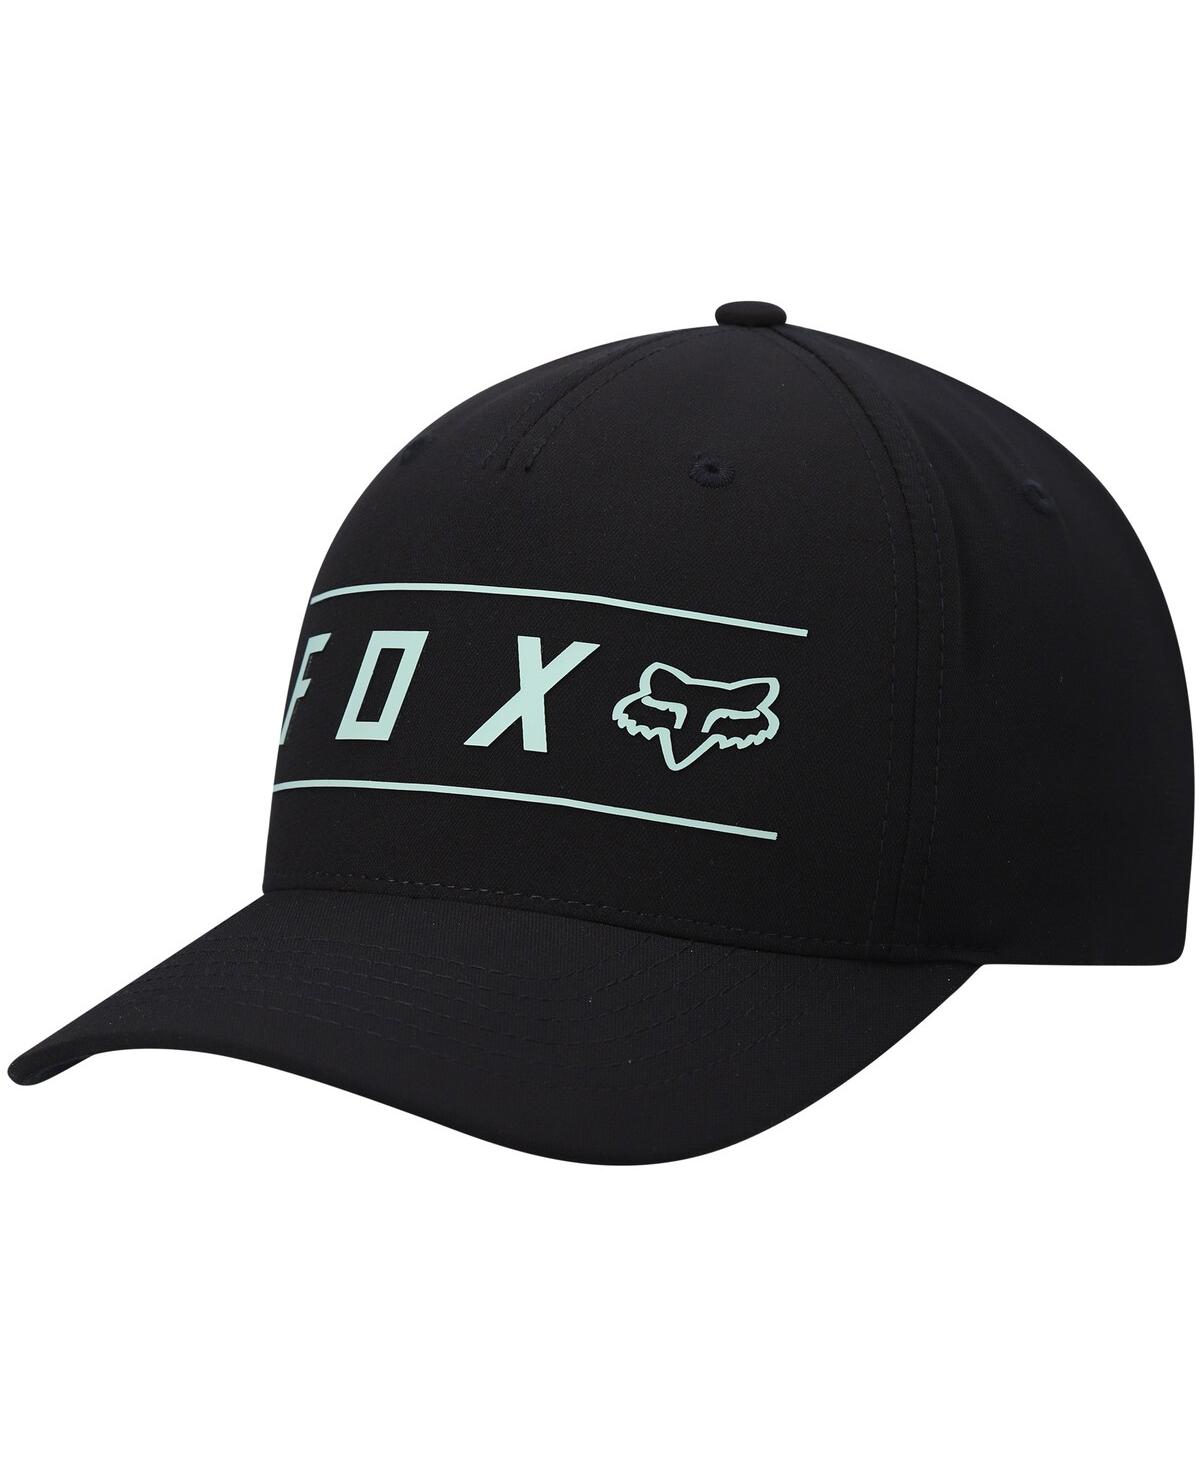 Men's Fox Black Pinnacle Tech Flex Hat - Black